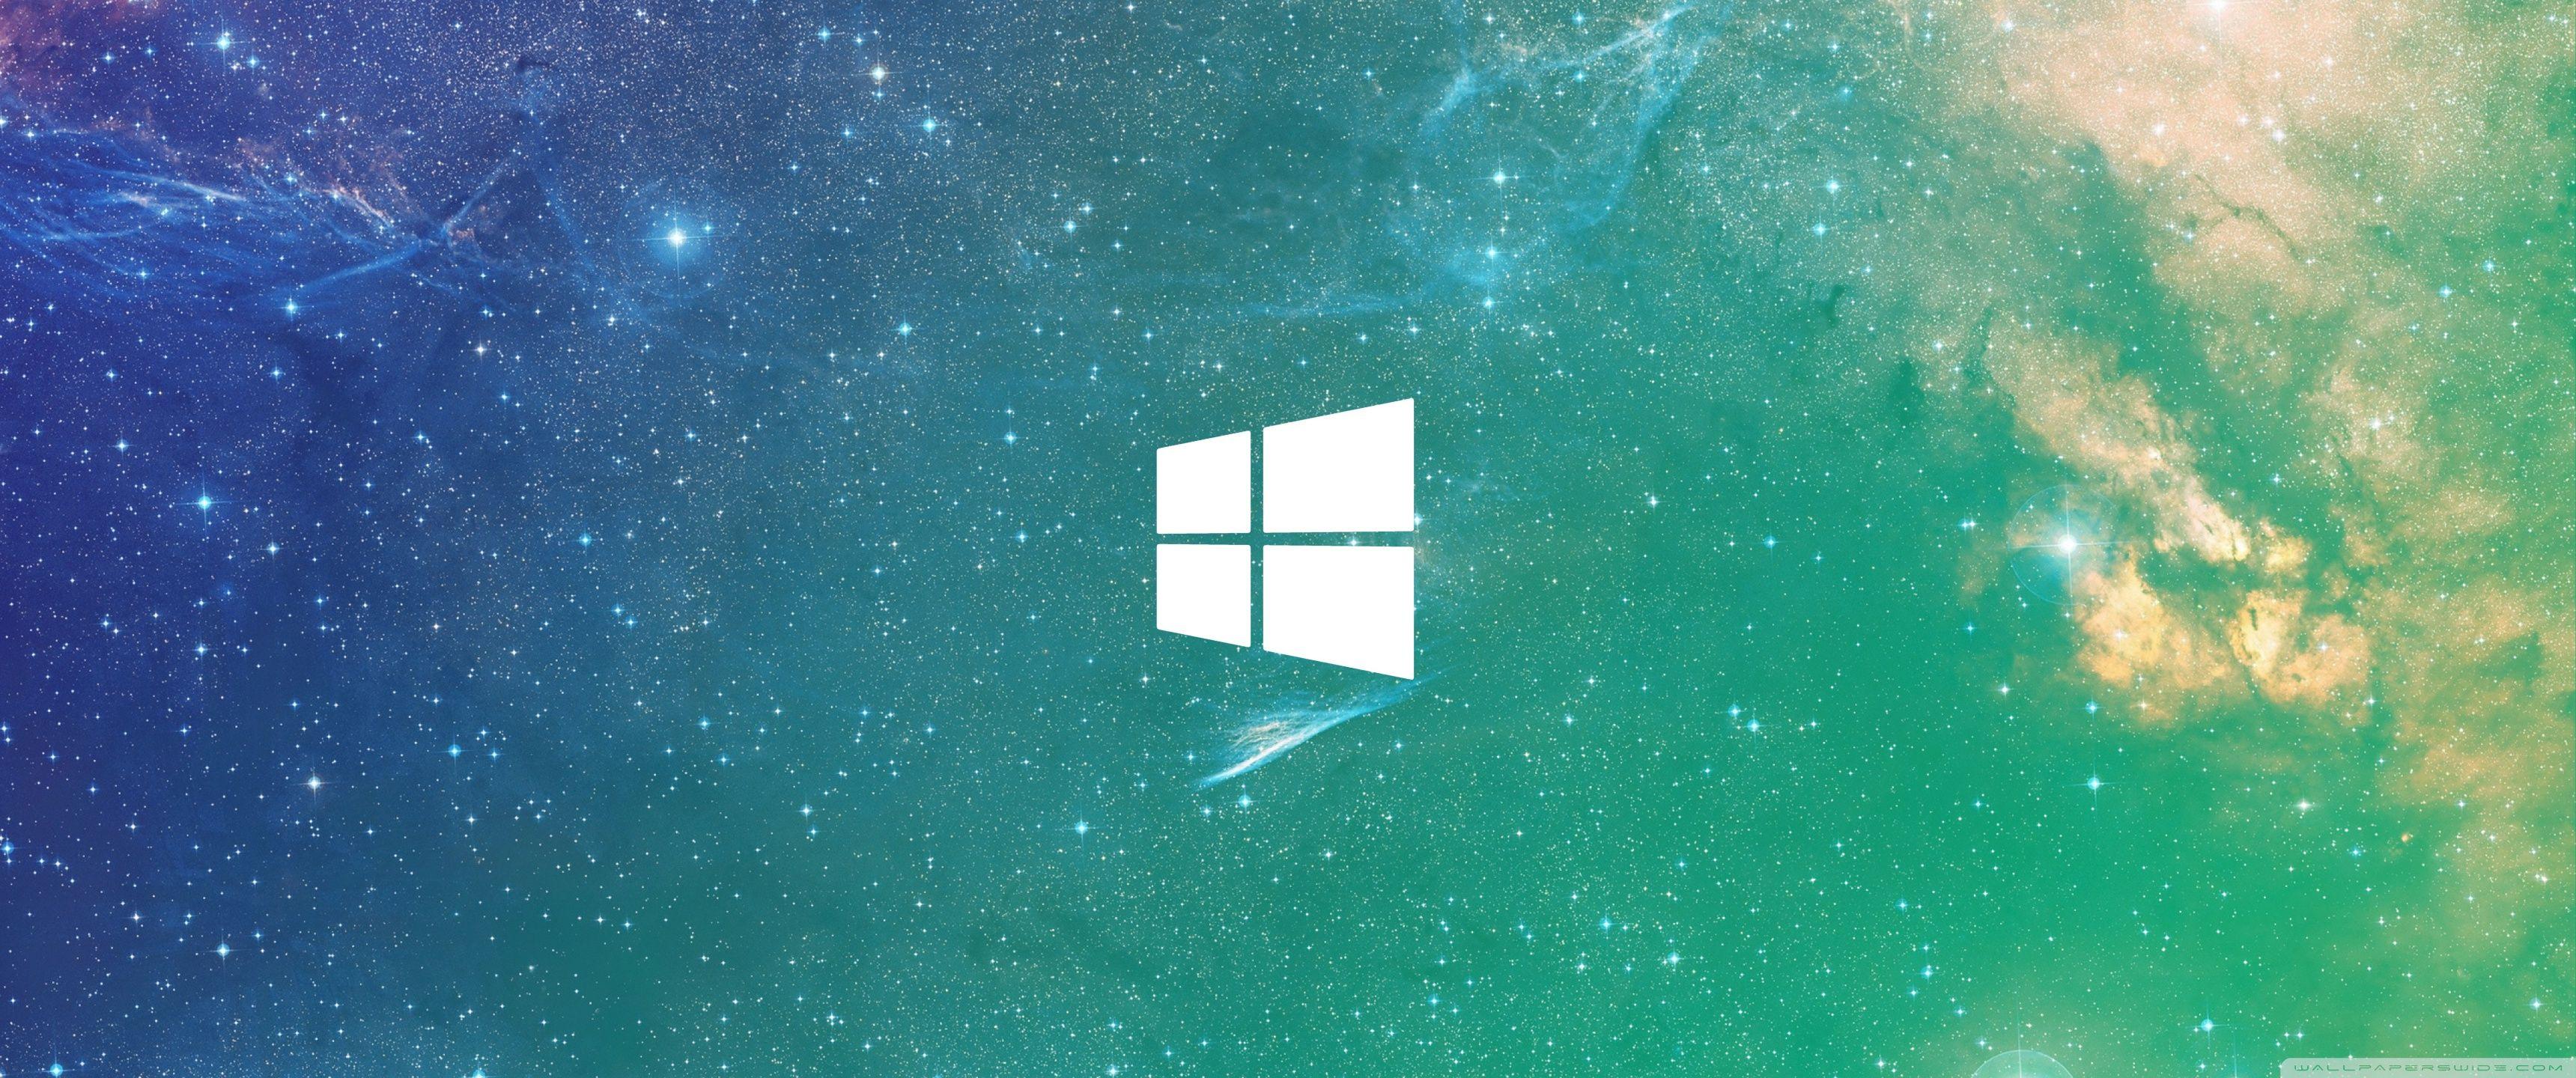 Windows 1.0 Ultra Wide Wallpaper